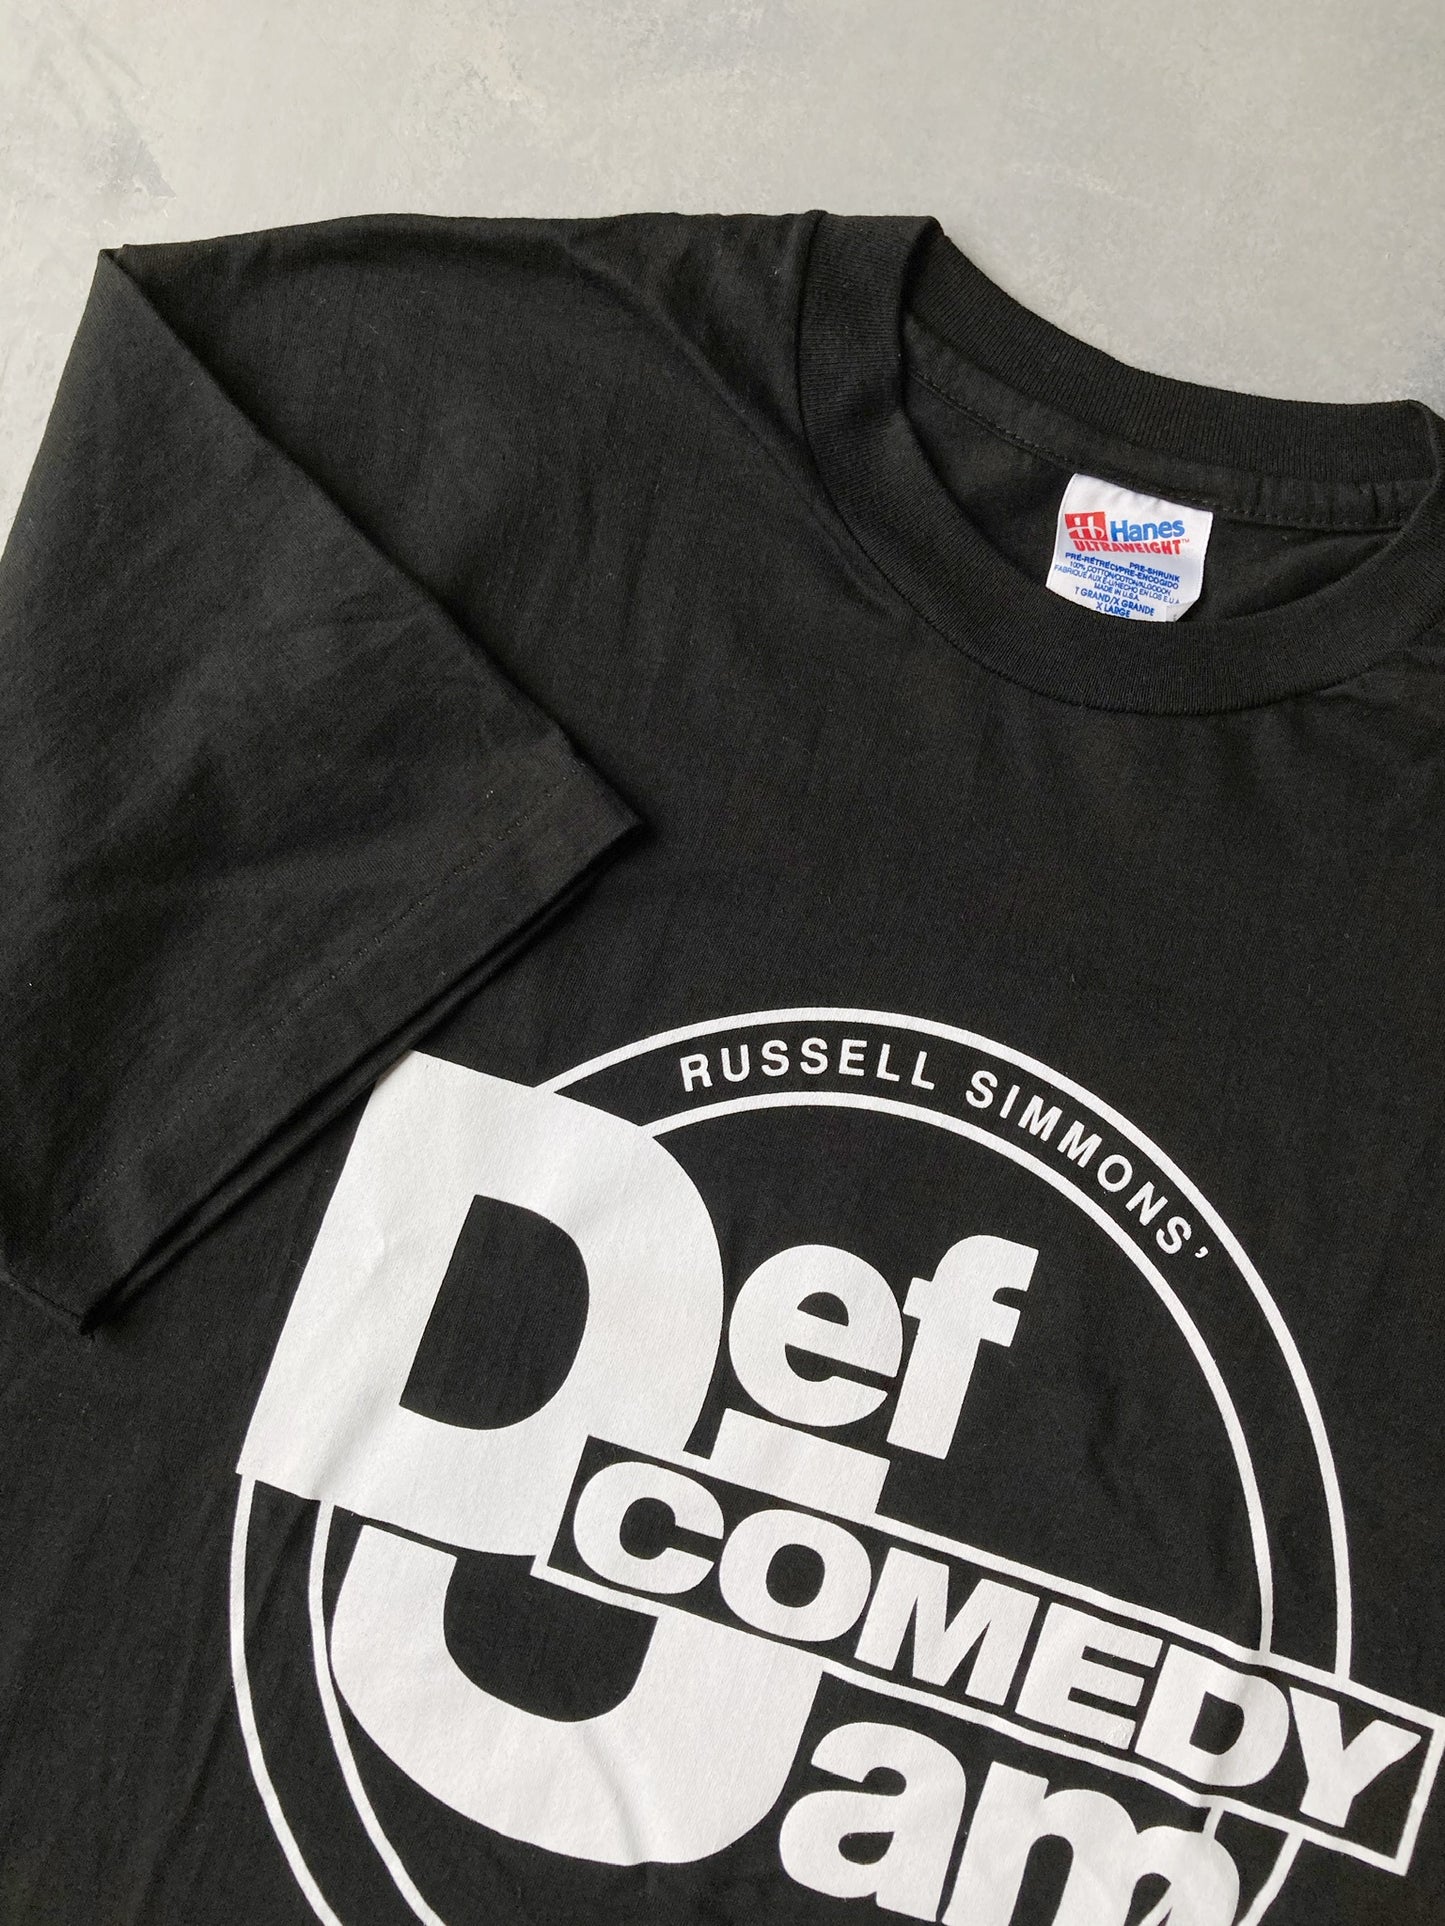 Def Jam Comedy T-Shirt 90's - XL